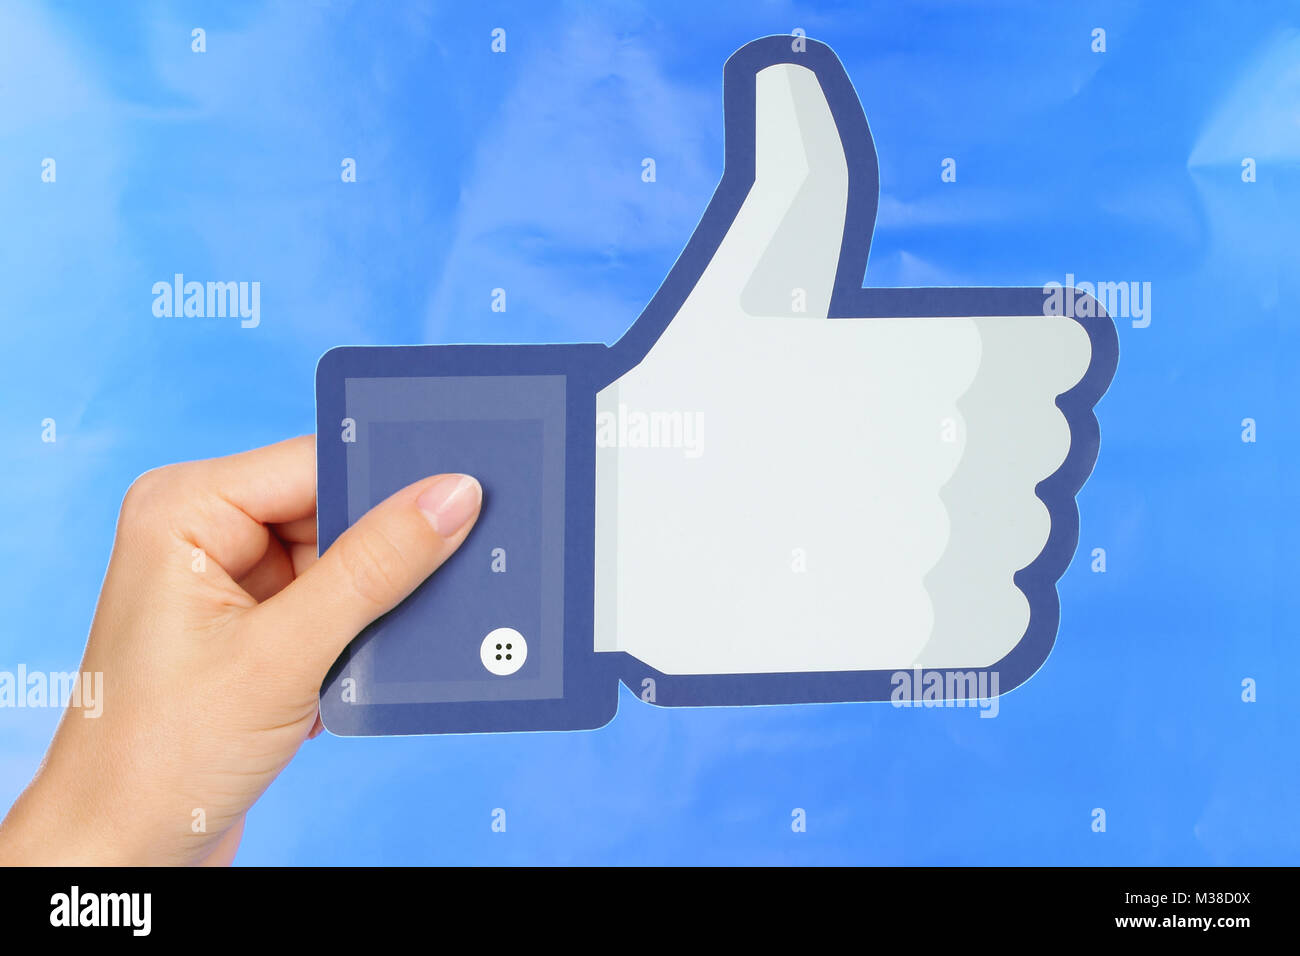 Kiew, Ukraine - 4. September 2017: Hand hält Facebook Logo auf Papier auf blauem Papier Hintergrund gedruckt. Facebook ist ein bekannter social networking Serv Stockfoto